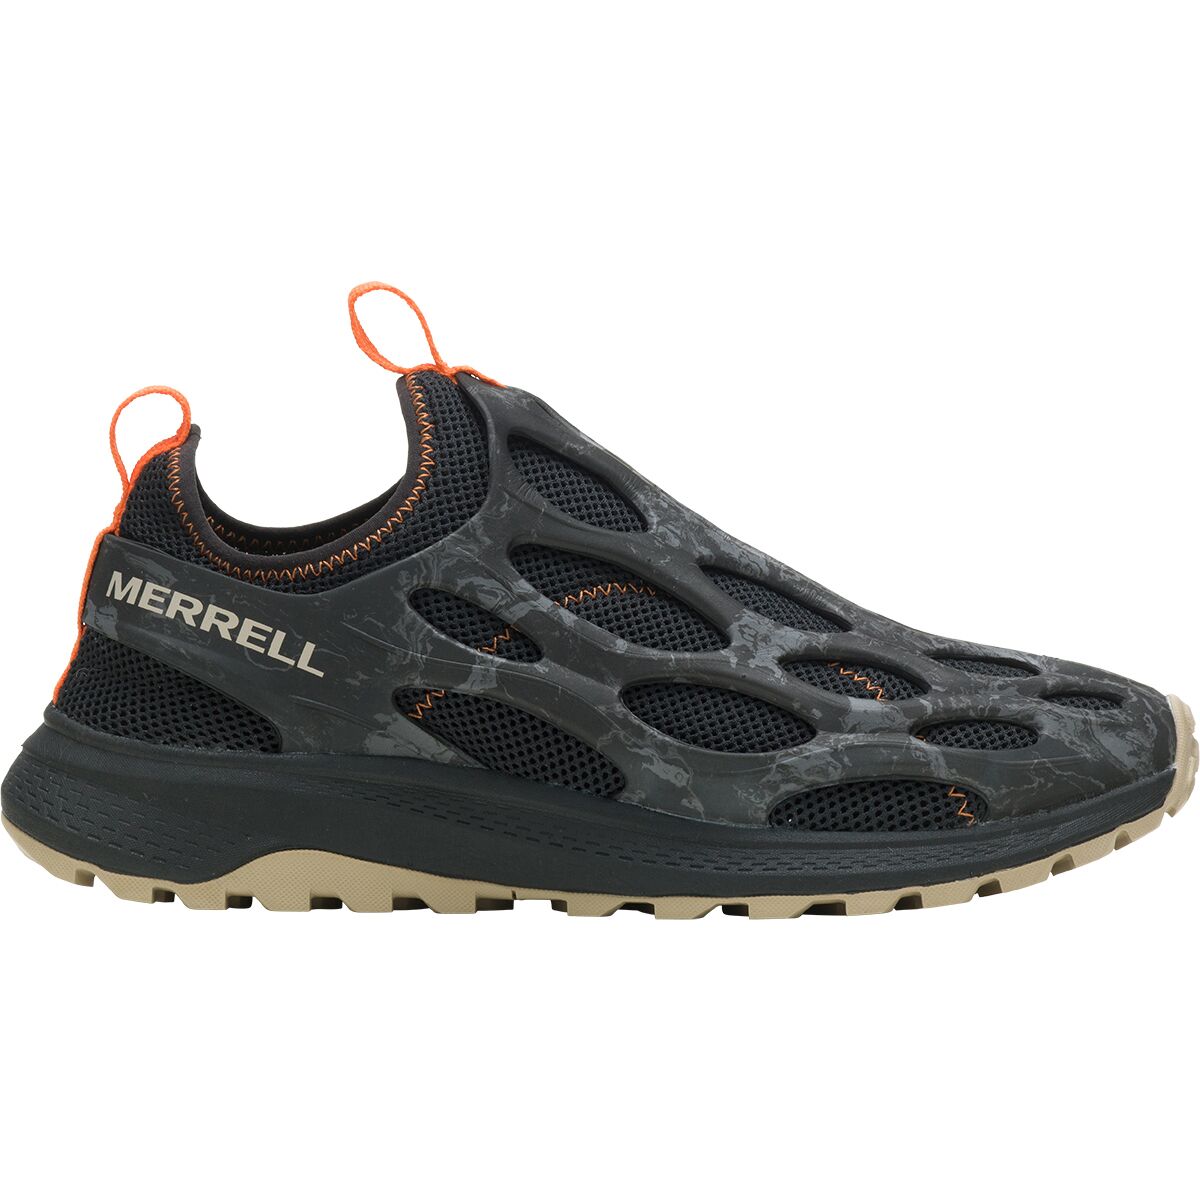 Merrell Hydro Runner Shoe - Men's